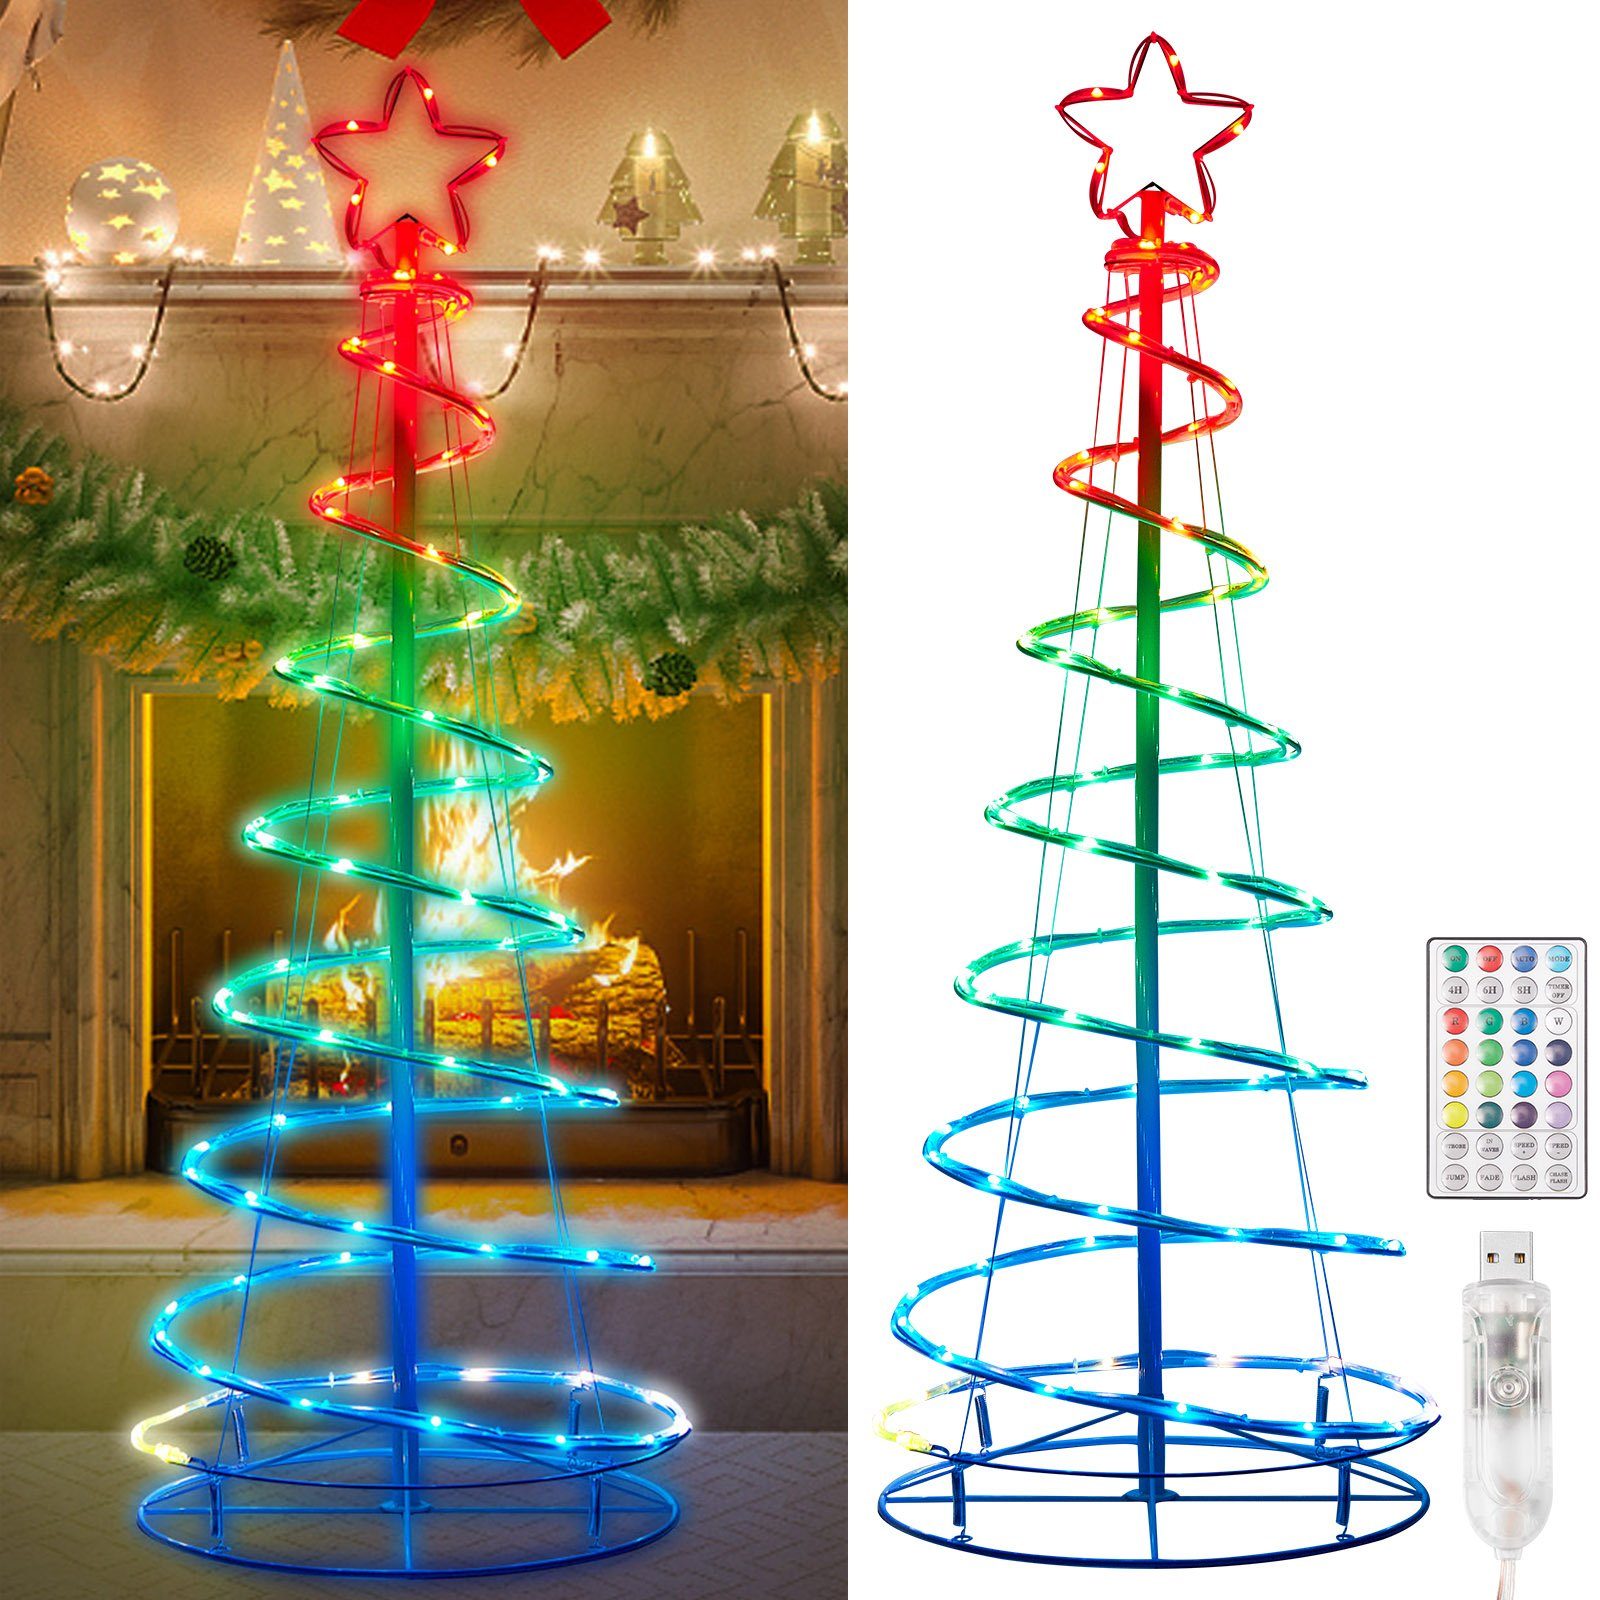 100%ige Echtheitsgarantie! MUPOO LED-Baummantel LED Weihnachtsbaum LED-Lichterkette,USB 73/100/135LEDs LED Timer&Fernbedienung,Zusammenklappbar Baummantel, Lichterkette